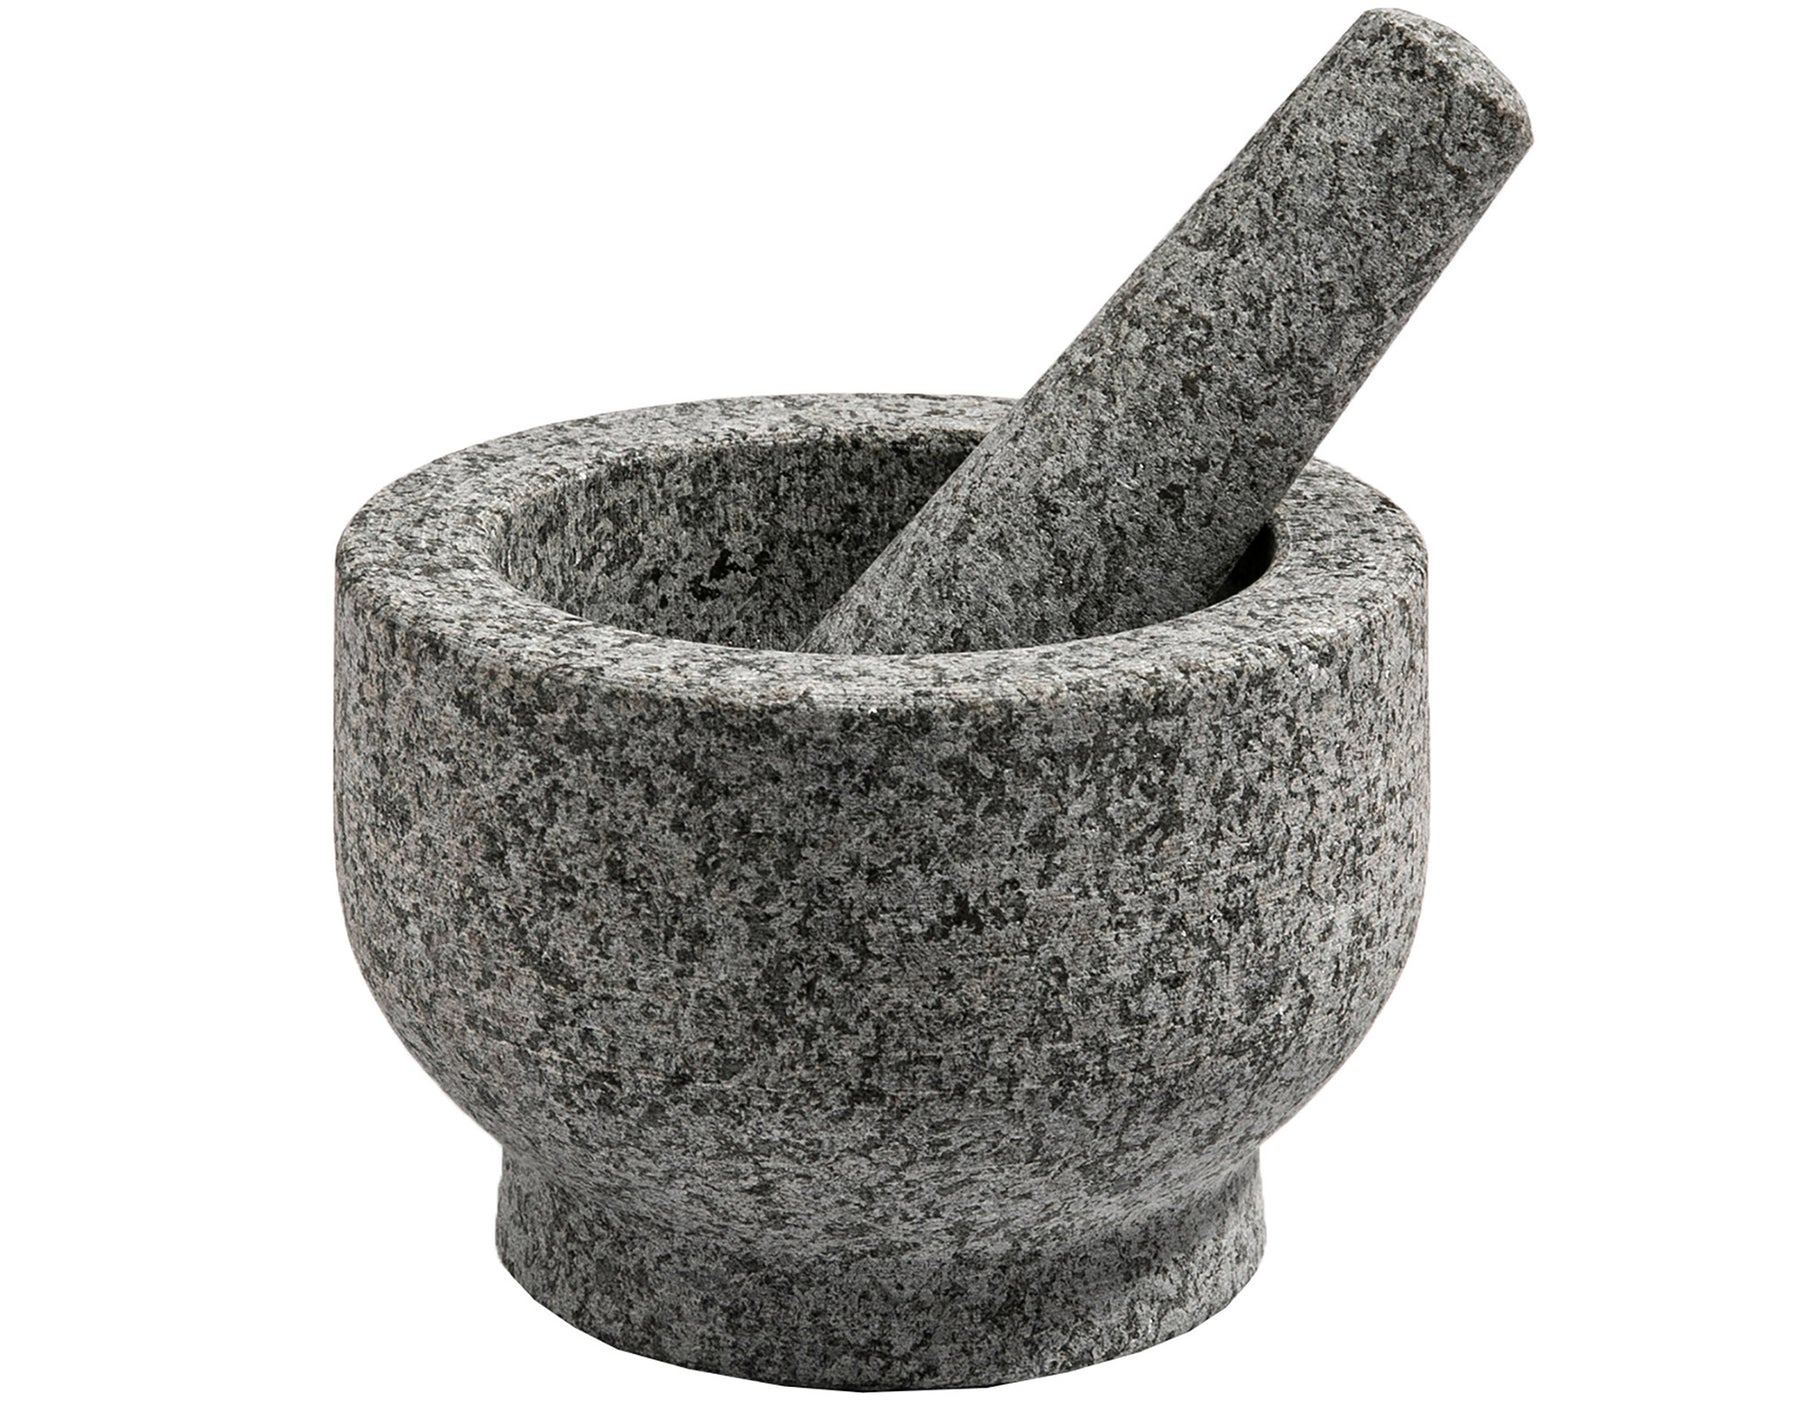 Mortar & Pestle Set (Unpolished Granite) for your kitchen